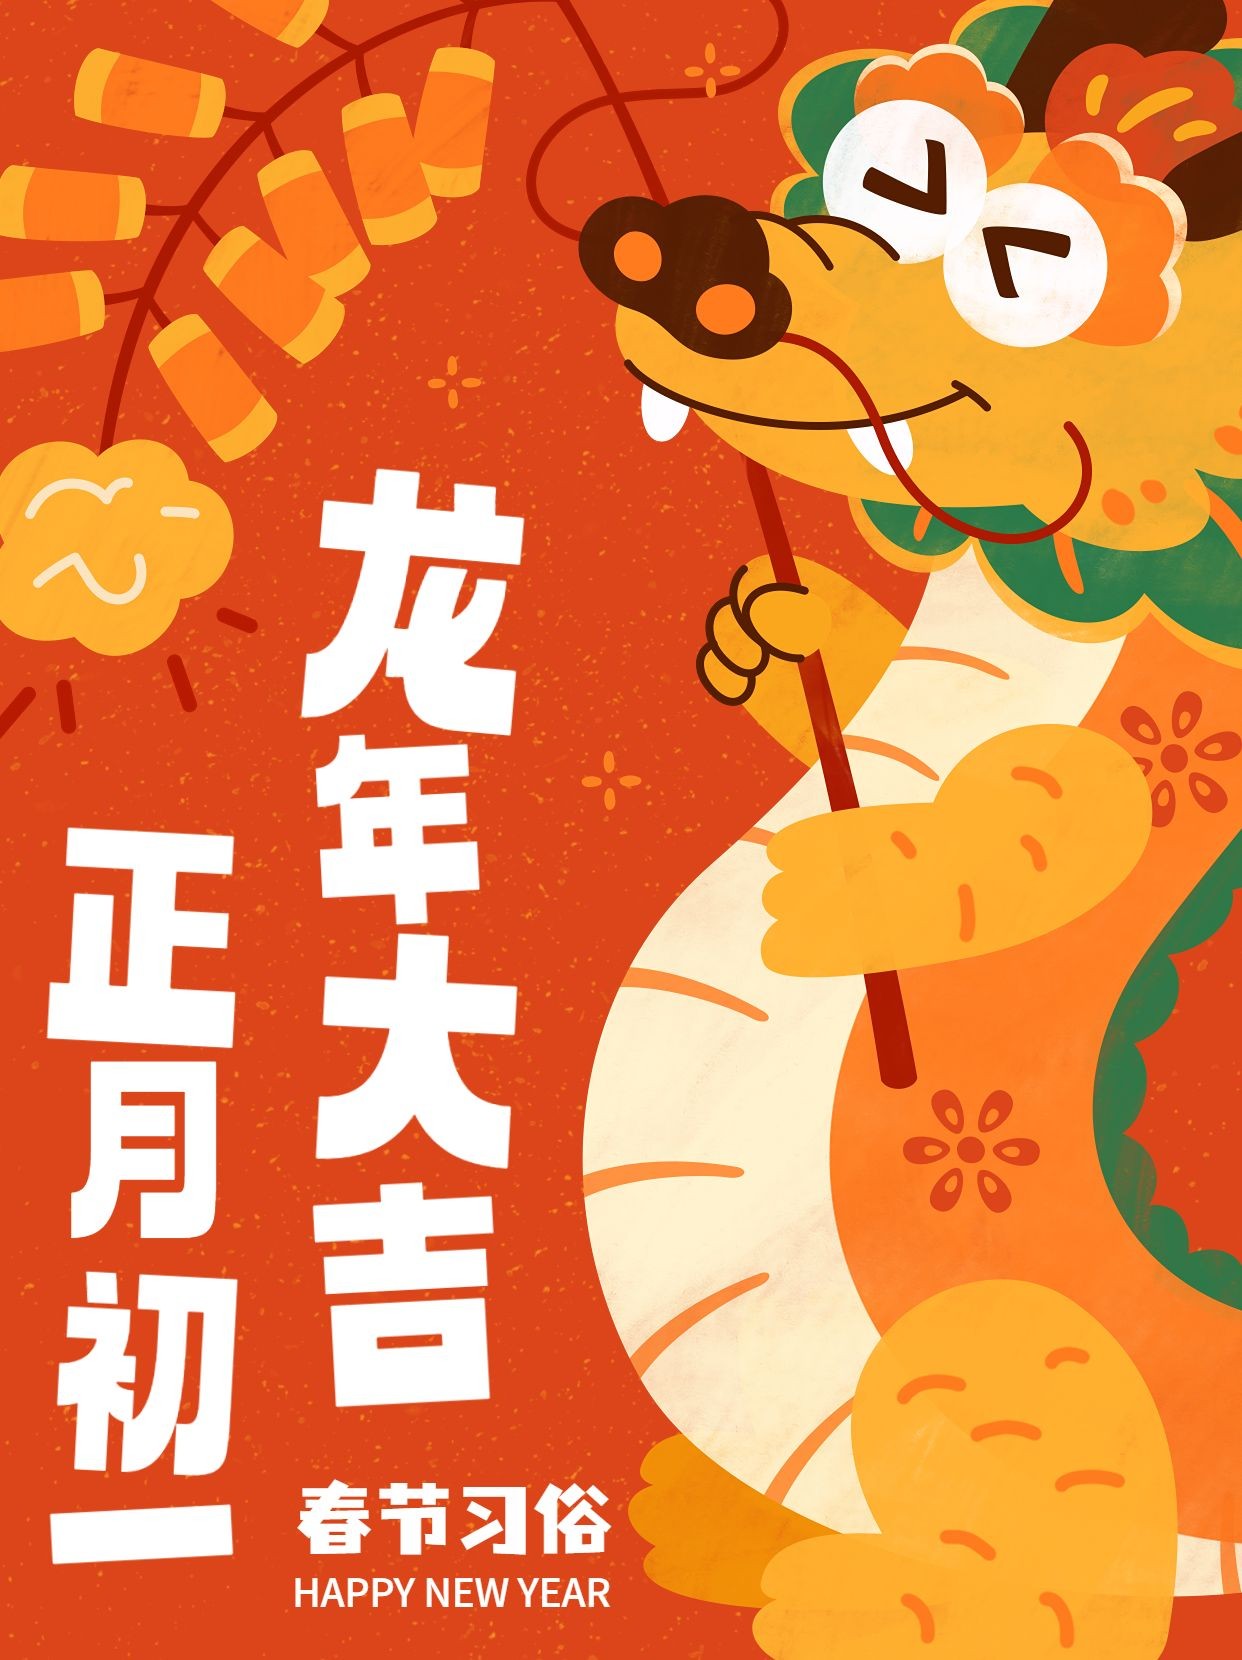 春节正月初一习俗科普套系小红书封面